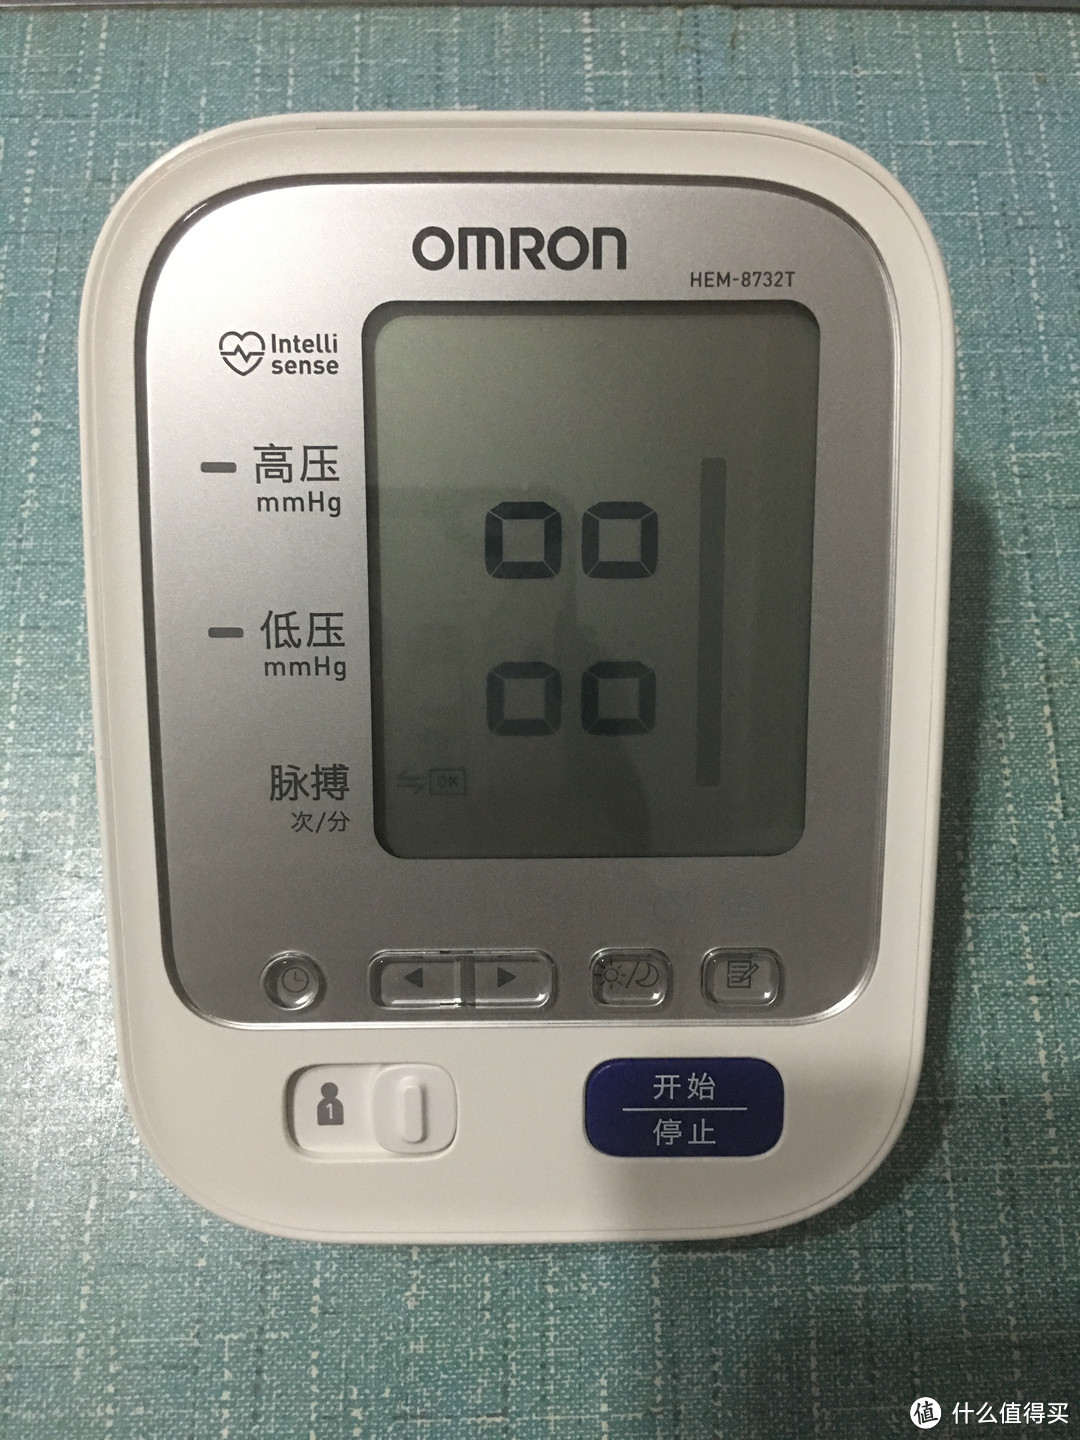 欧姆龙 HEM-8732T 上臂式血压计 开箱体验